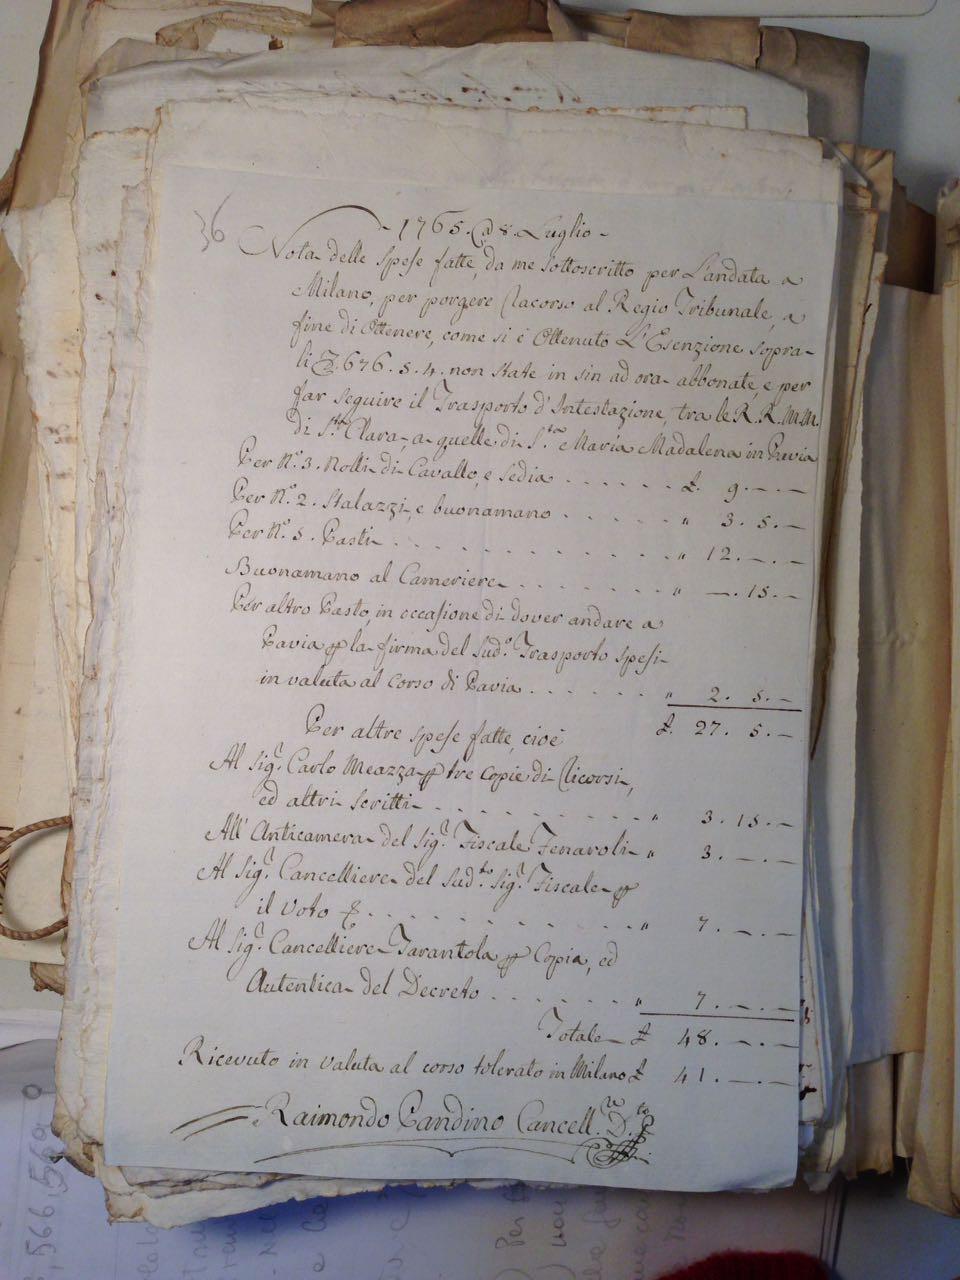 Il documento sottostante invece risale all 8 luglio 1765 e rappresenta una nota delle spese fatta per porgere ricorso al regio tribunale a Milano per ottenere l esenzione di 676.5.4 (ducati...).